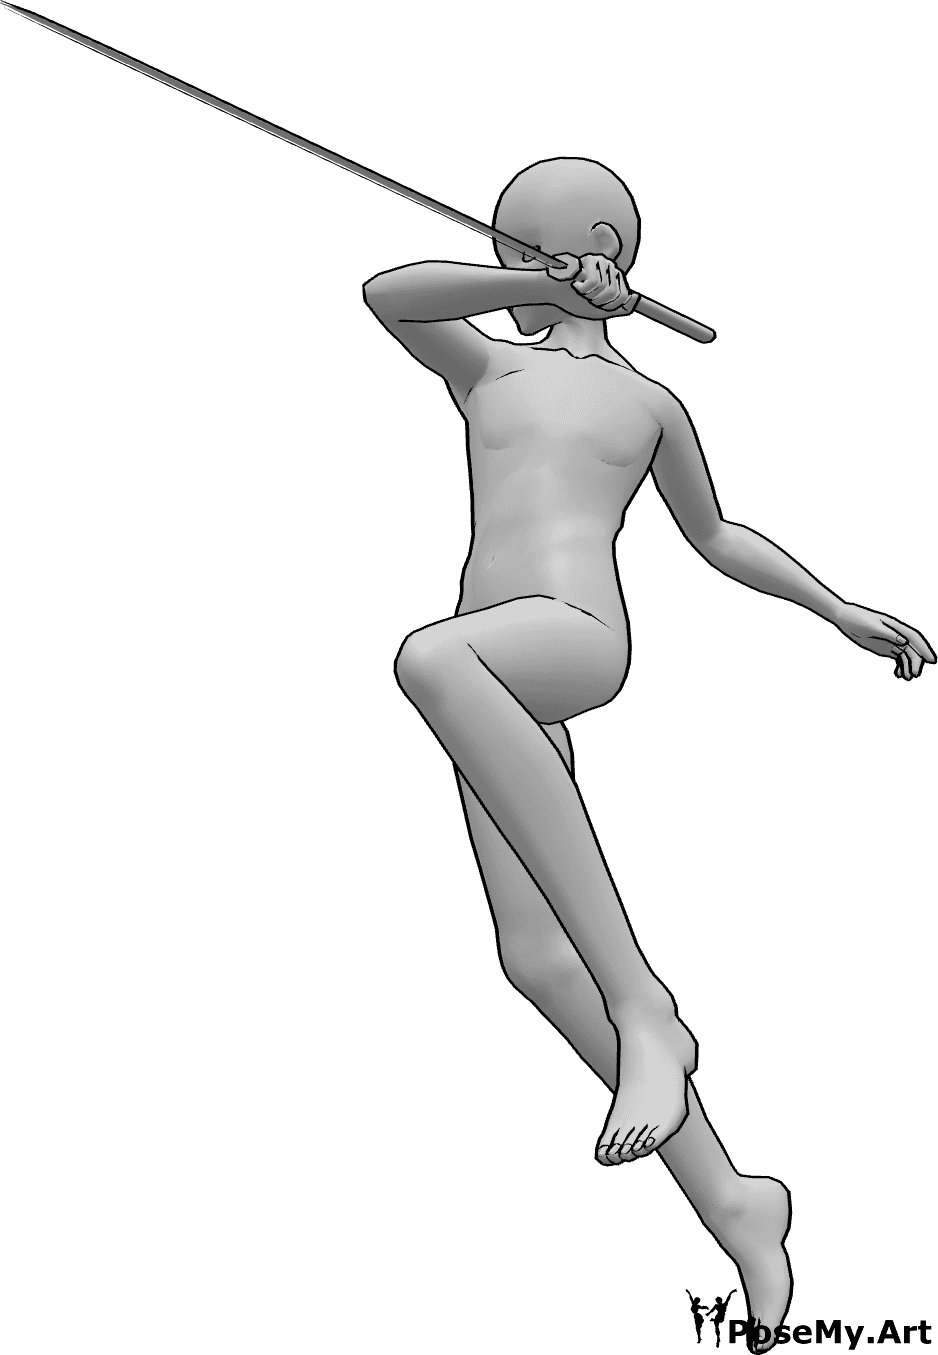 Riferimento alle pose- Posa d'attacco della katana - Maschio anonimo che attacca, saltando in alto per pugnalare con la katana nella mano destra.